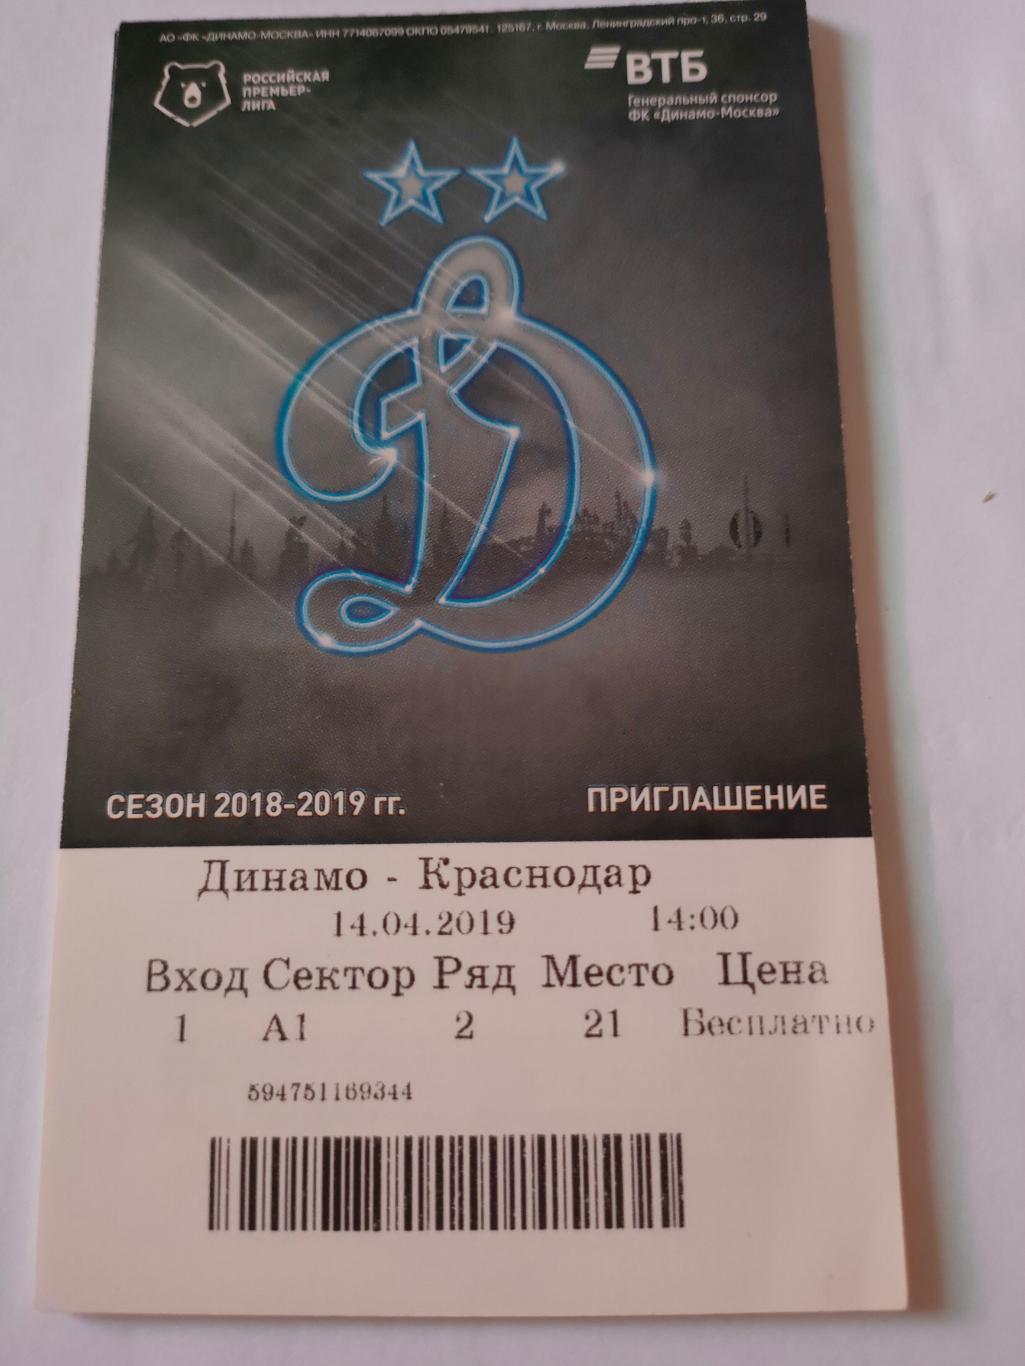 14.04.2019 - Динамо (Москва) - Краснодар (Краснодар)